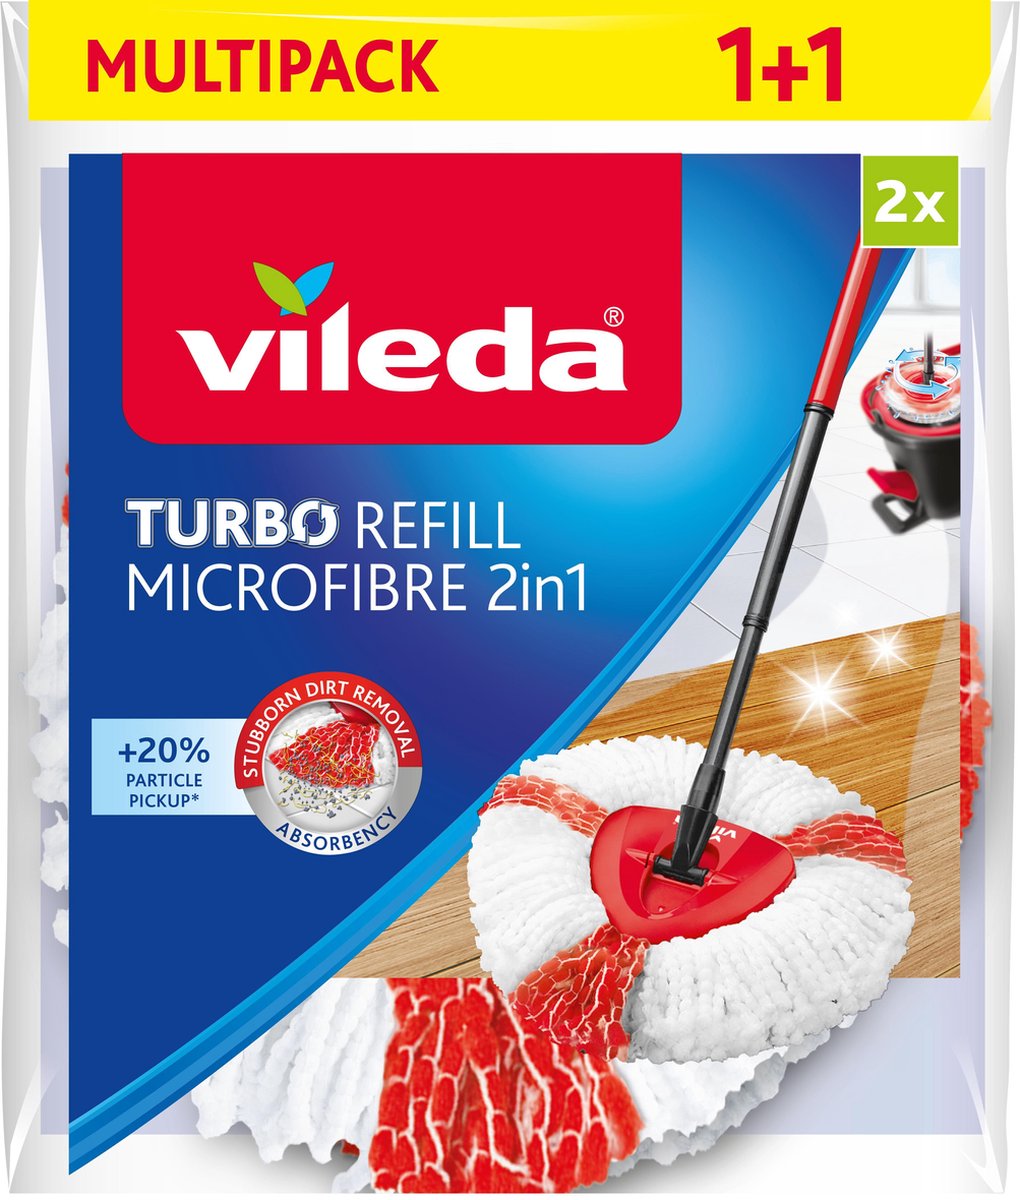 Vileda TURBO 2in1 - Vervanging - Microvezel - Bipack - Vileda